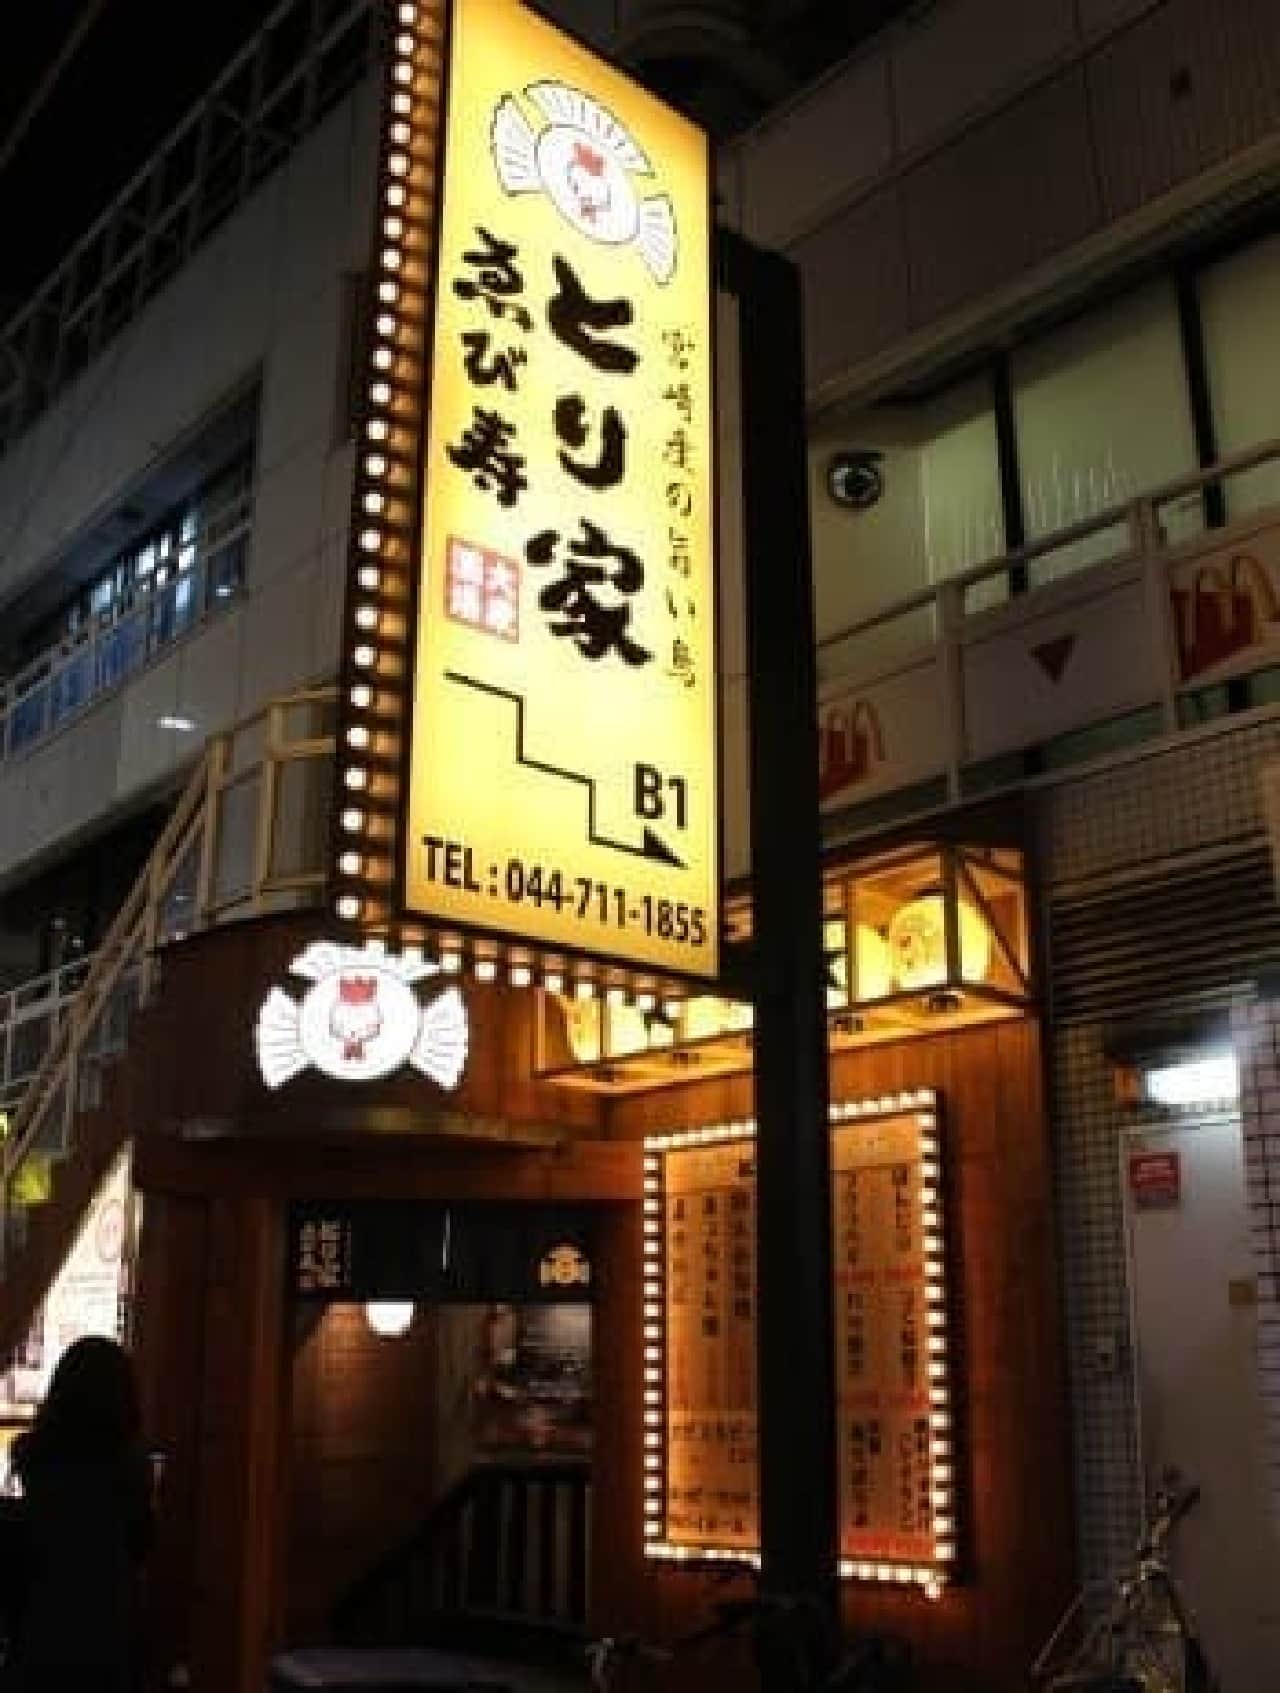 Toriya Yebisu Musashikosugi store